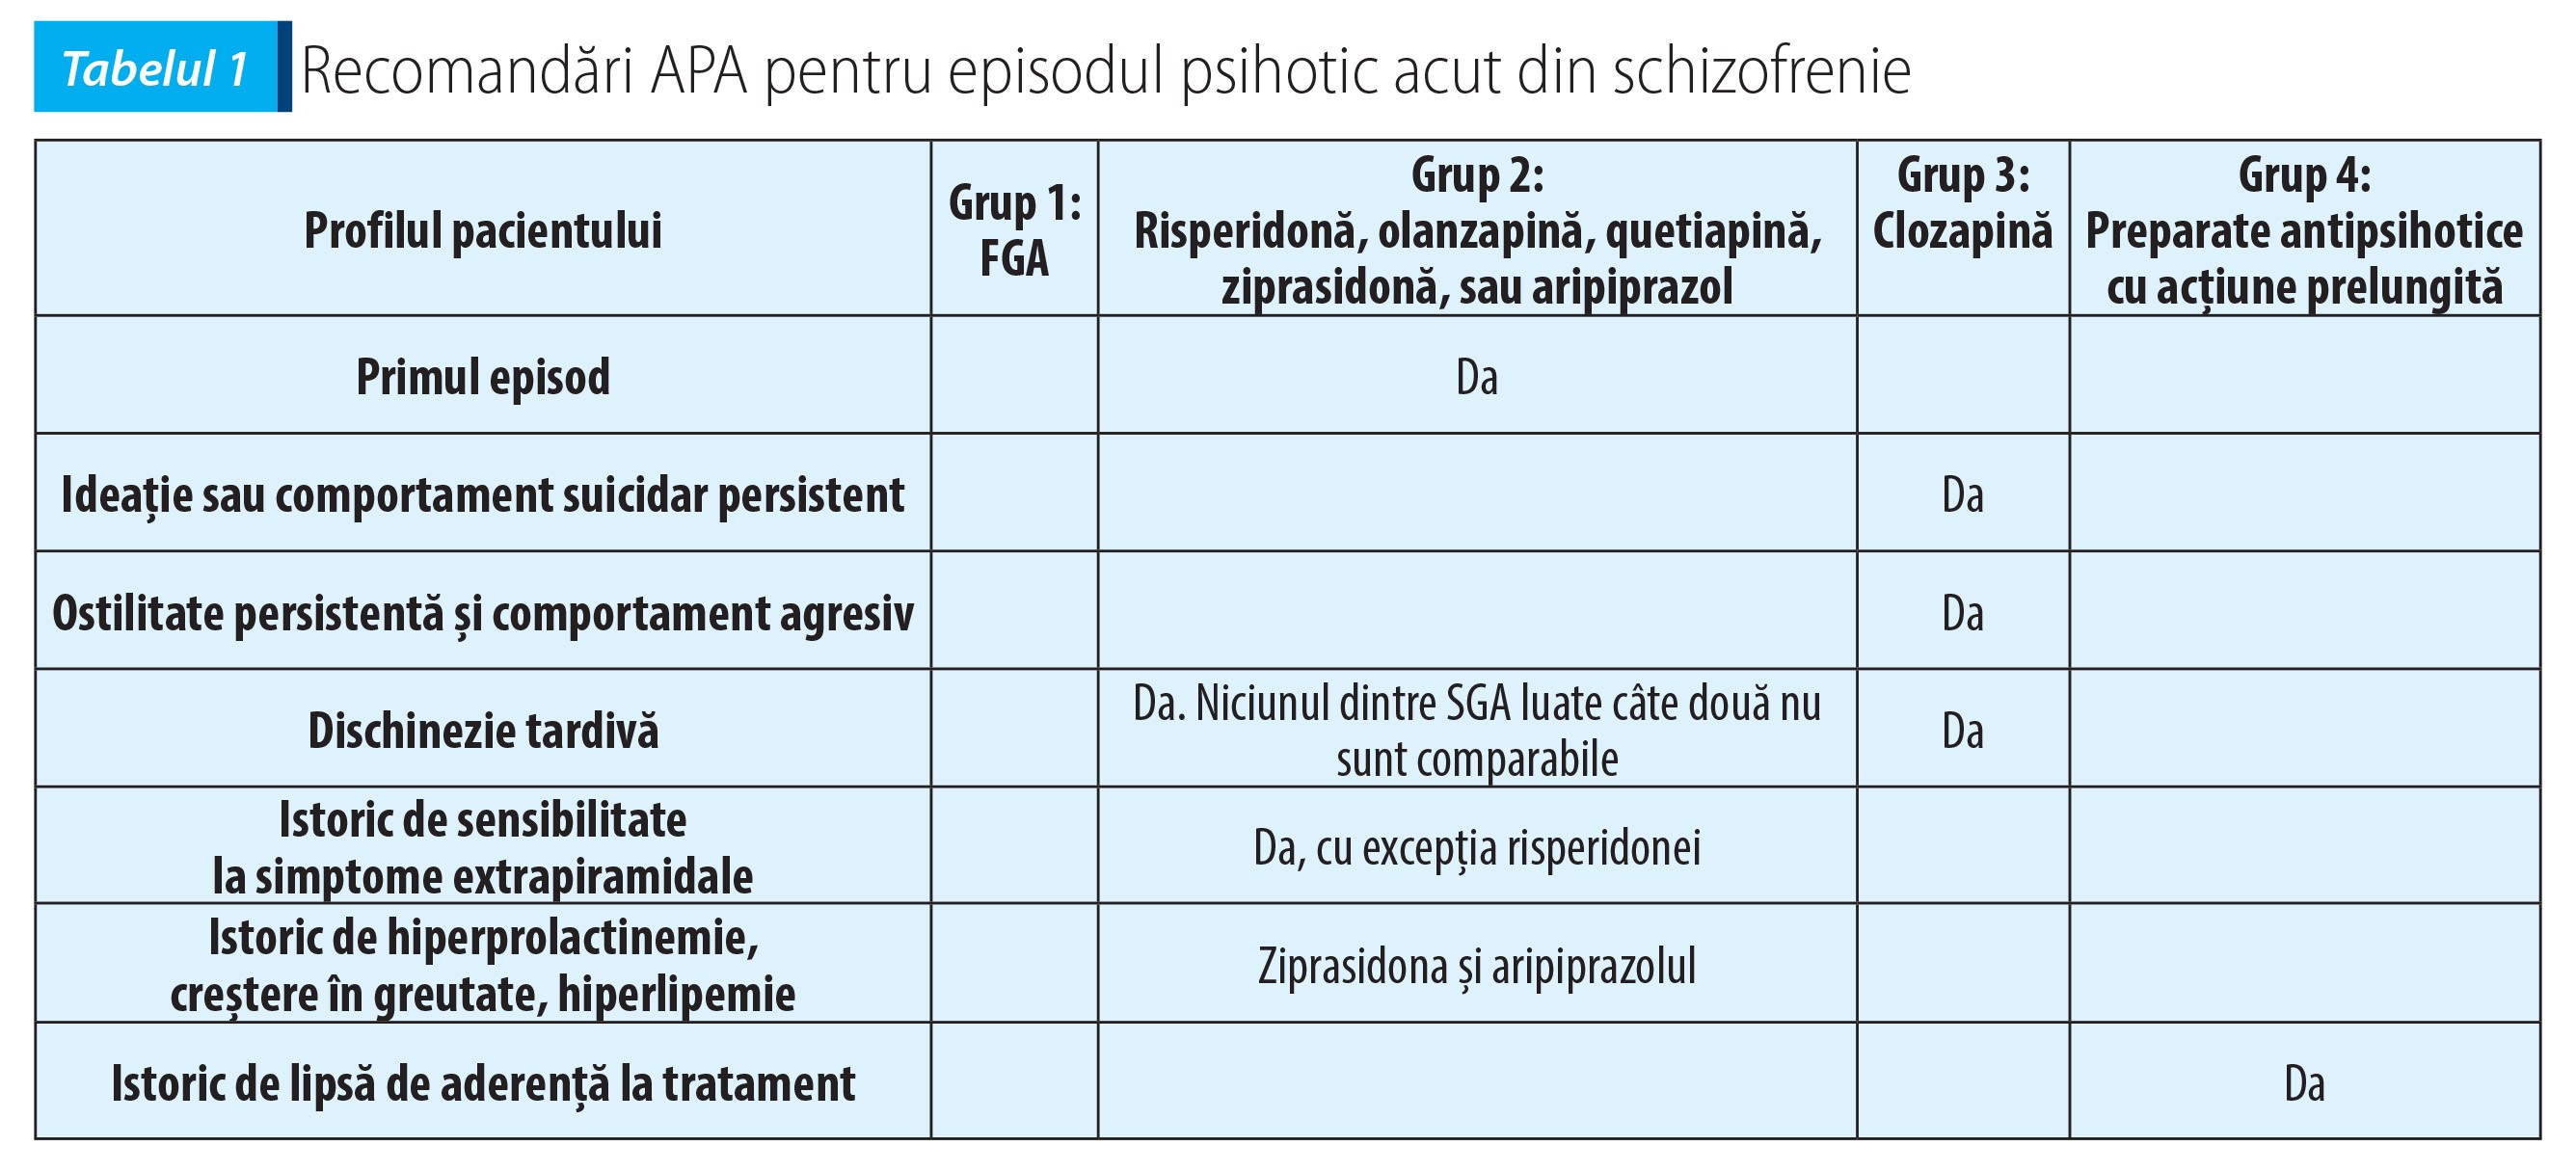 Tabelul 1 Recomandări APA pentru episodul psihotic acut din schizofrenie